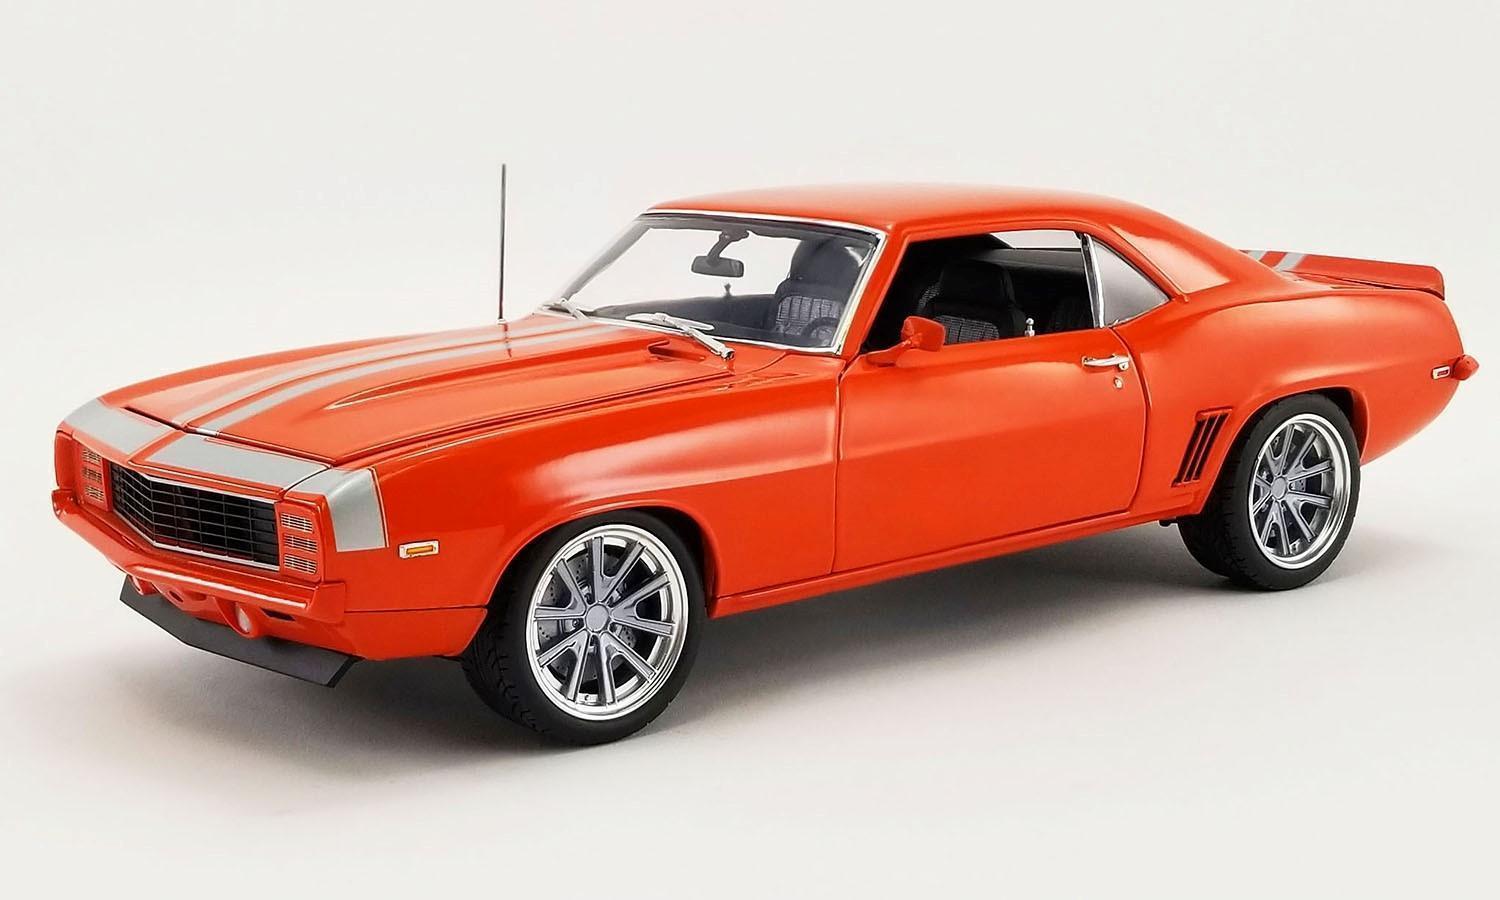 PRE ORDER - 1969 Chevrolet Camaro Restomod Orange 1:18 Scale Model Car (FULL PRICE $299.99)**